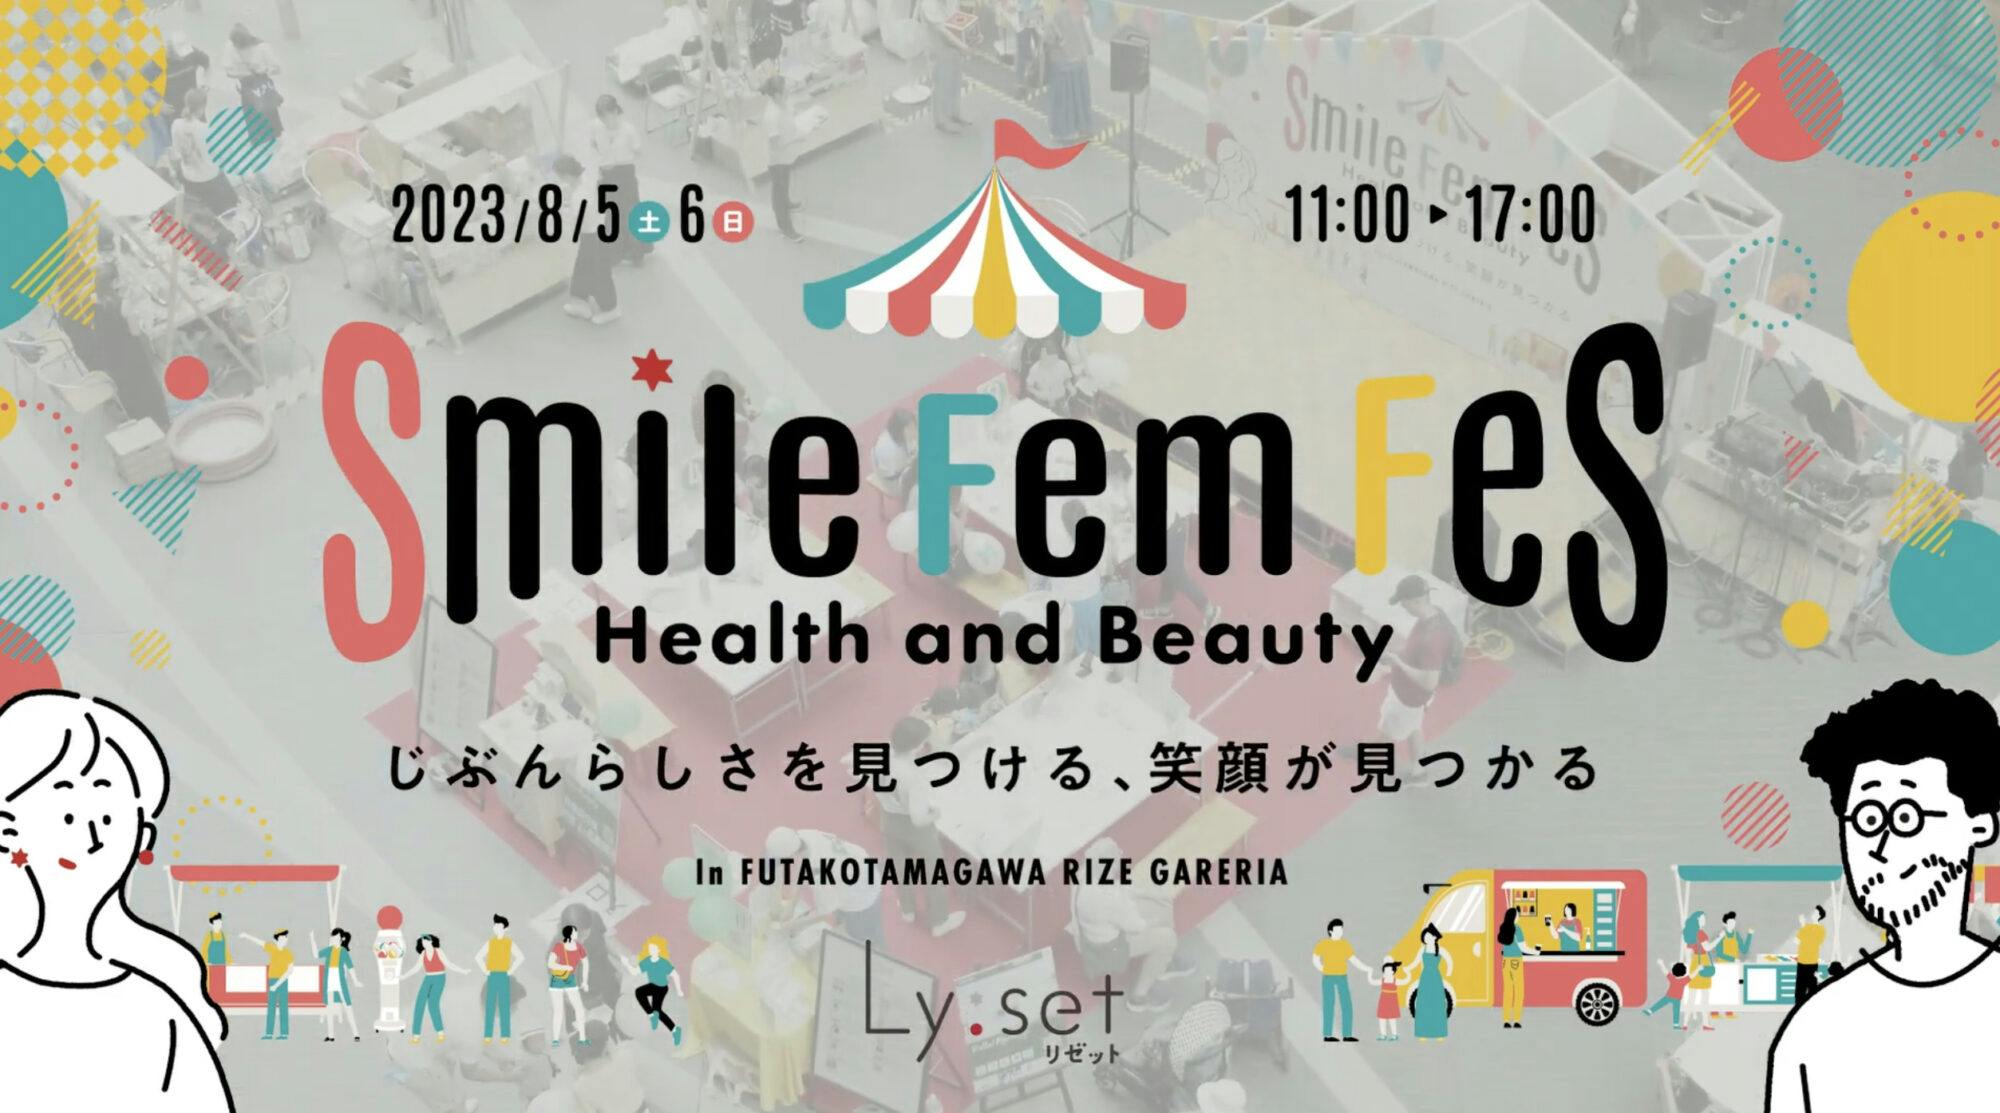 Ly:setイベント（SmileFemFes）の動画を公開しました。